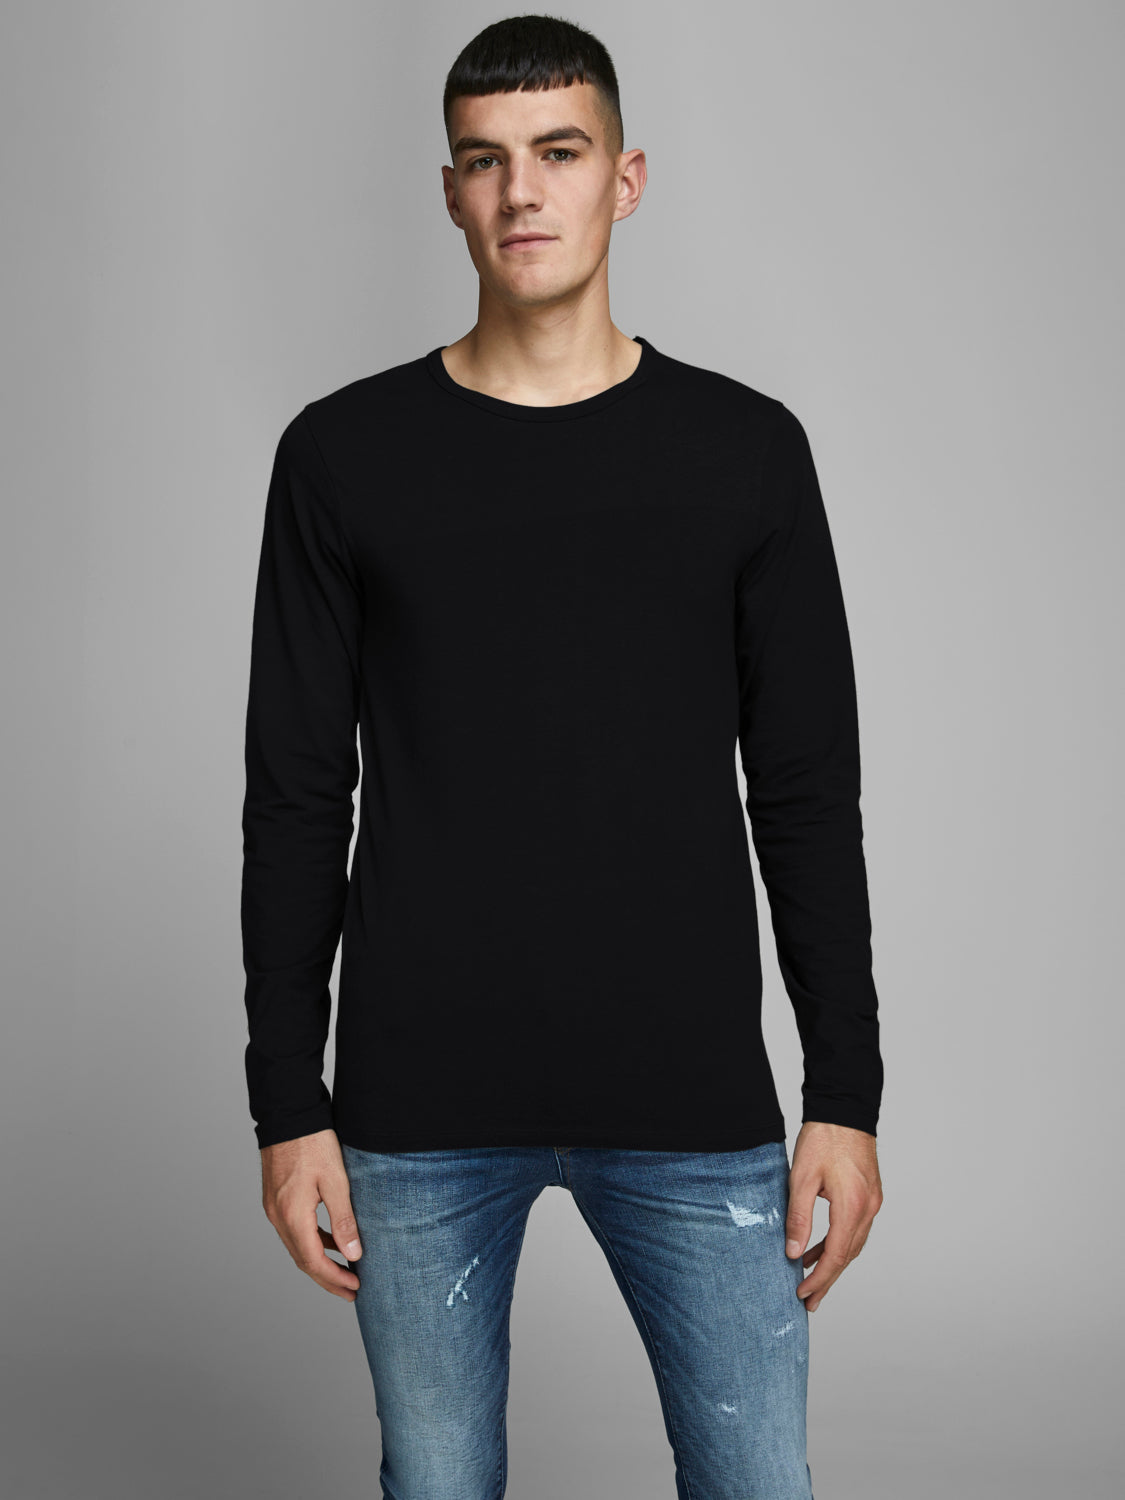 JJEBASIC T-shirt - black